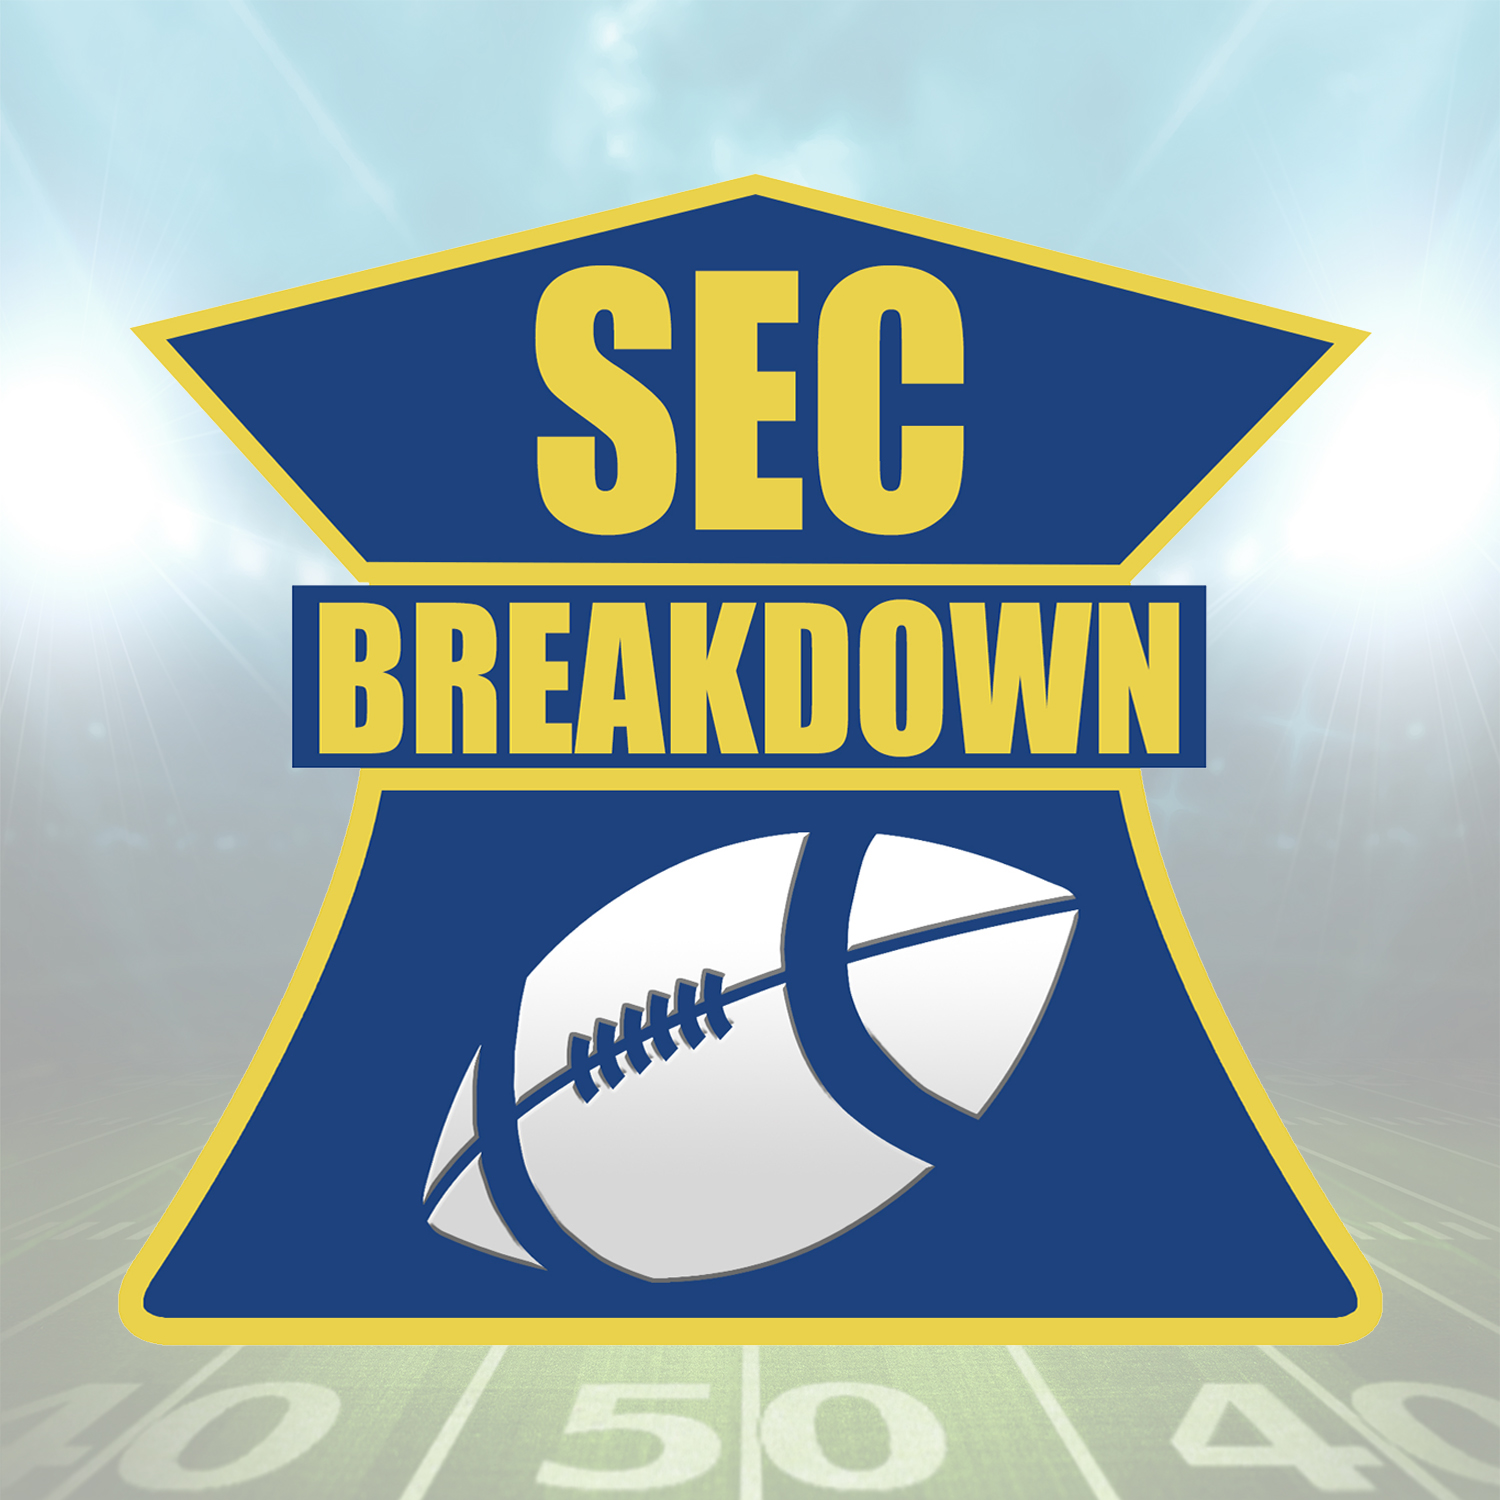 SEC Breakdown - 2016 Media Predictions